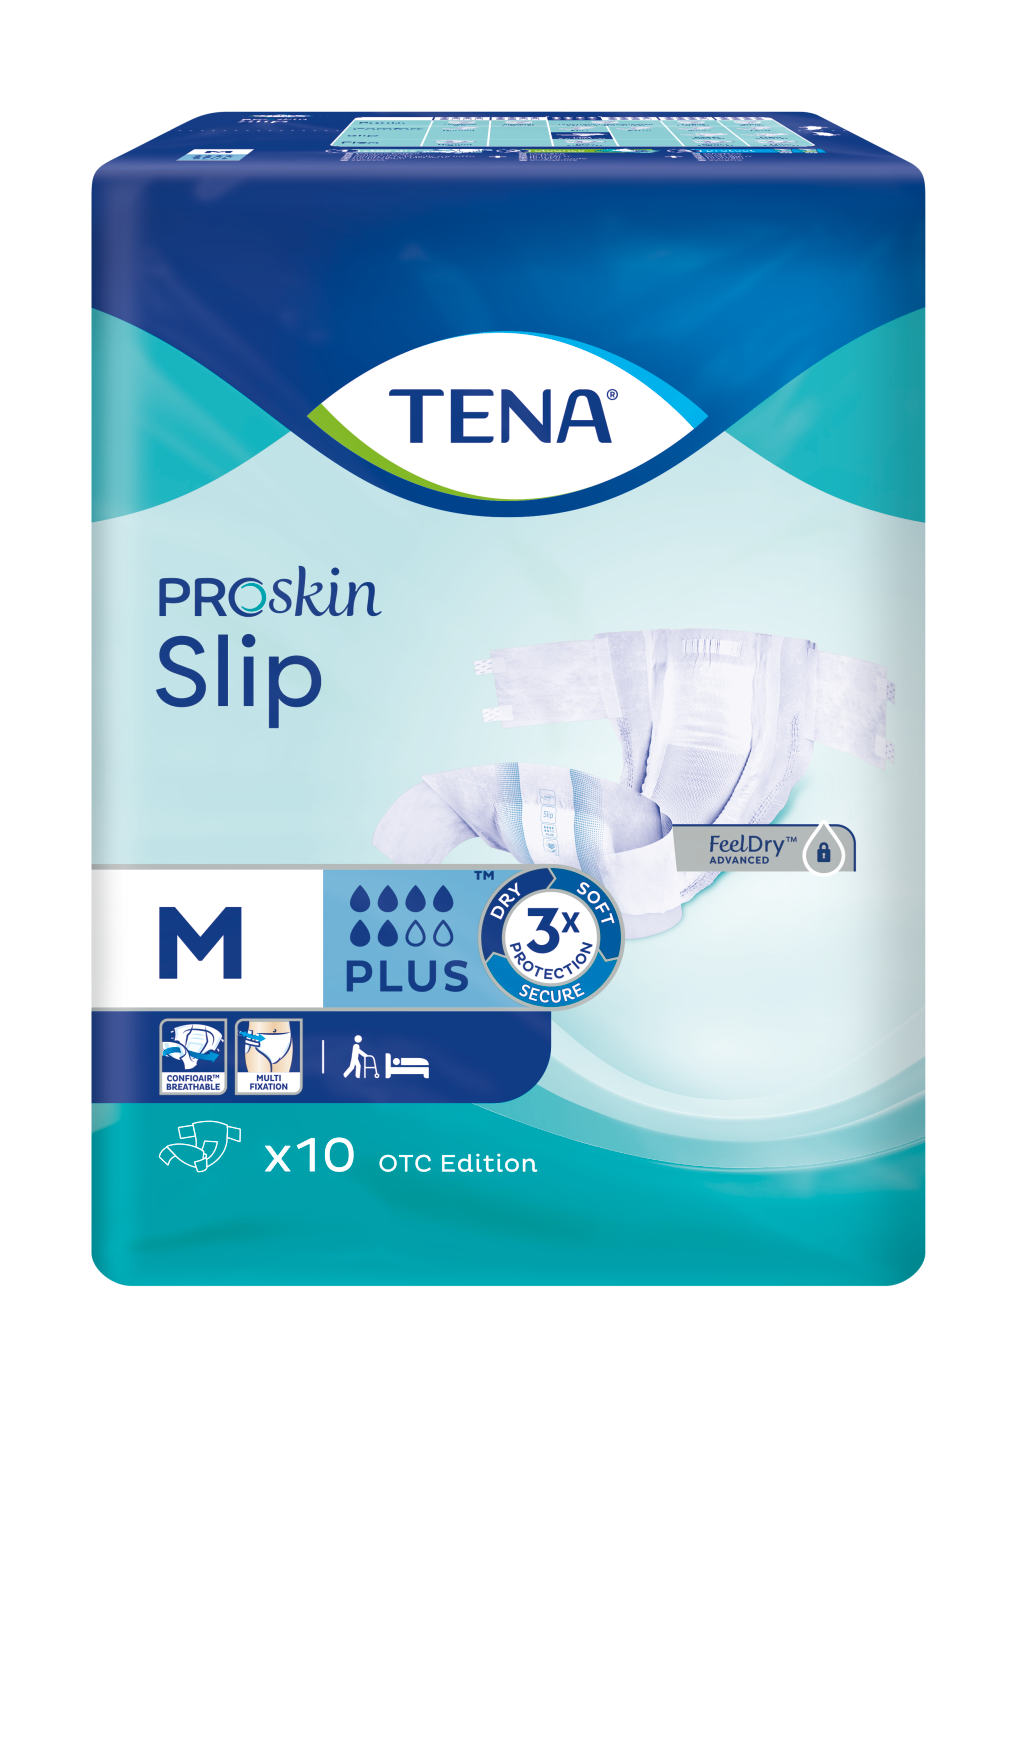 Подгузники для взрослых Tena Slip Plus, Medium M (2), Plus (6 капель), 10 шт.